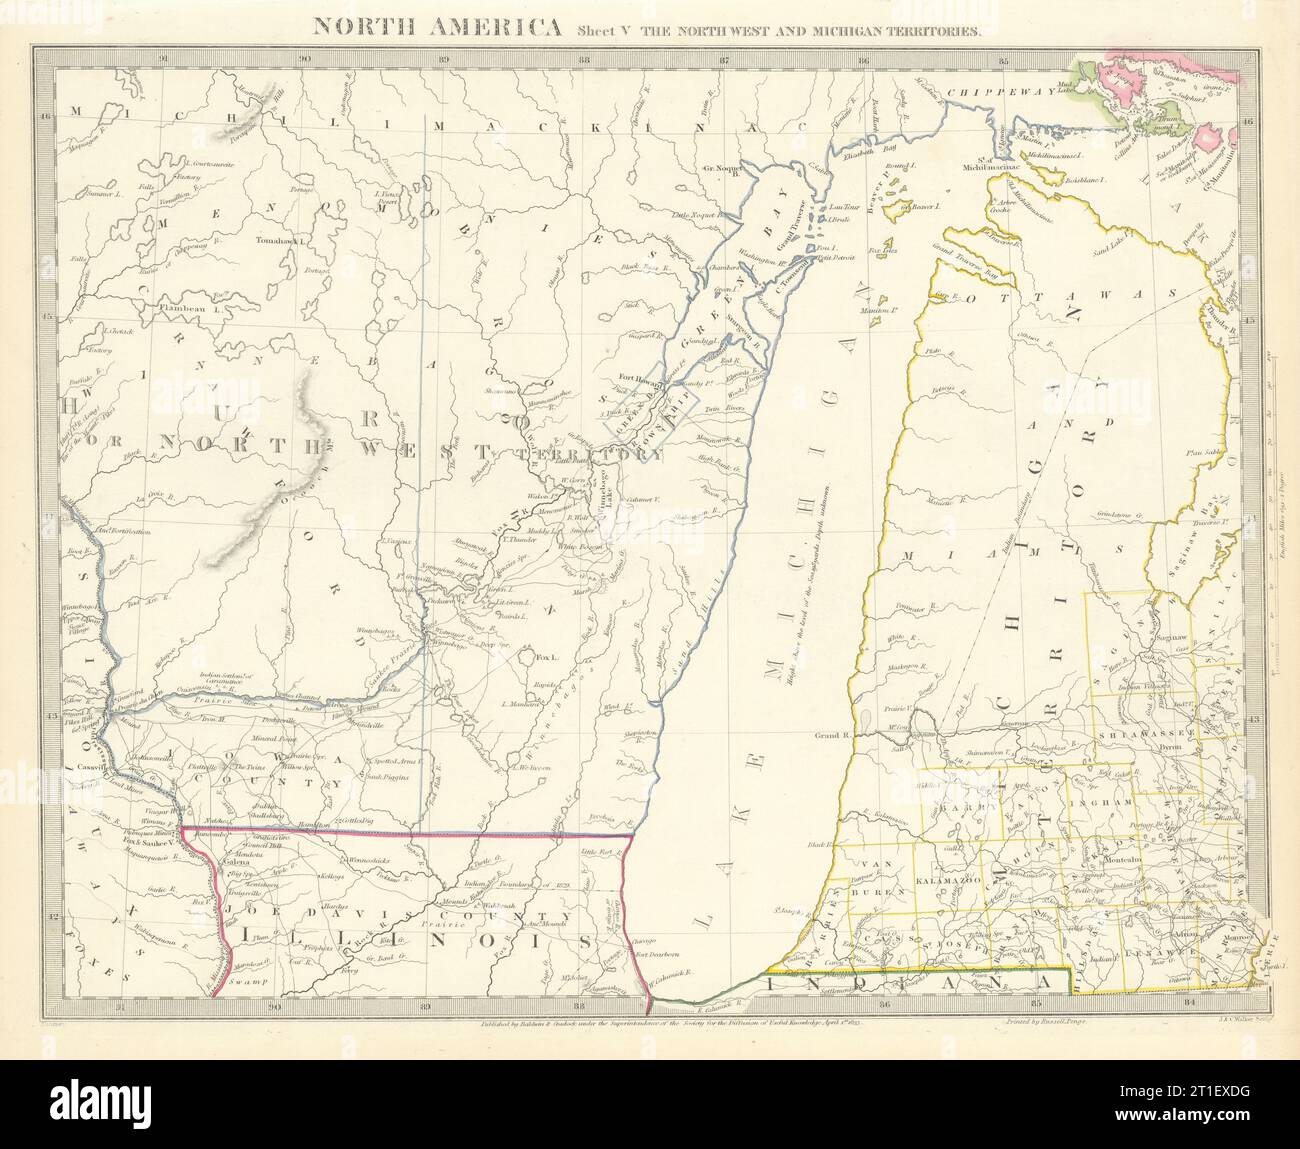 LAKE MICHIGAN.Wisconsin - territorio del NW.villaggi delle tribù indiane. Mappa SDUK 1844 Foto Stock